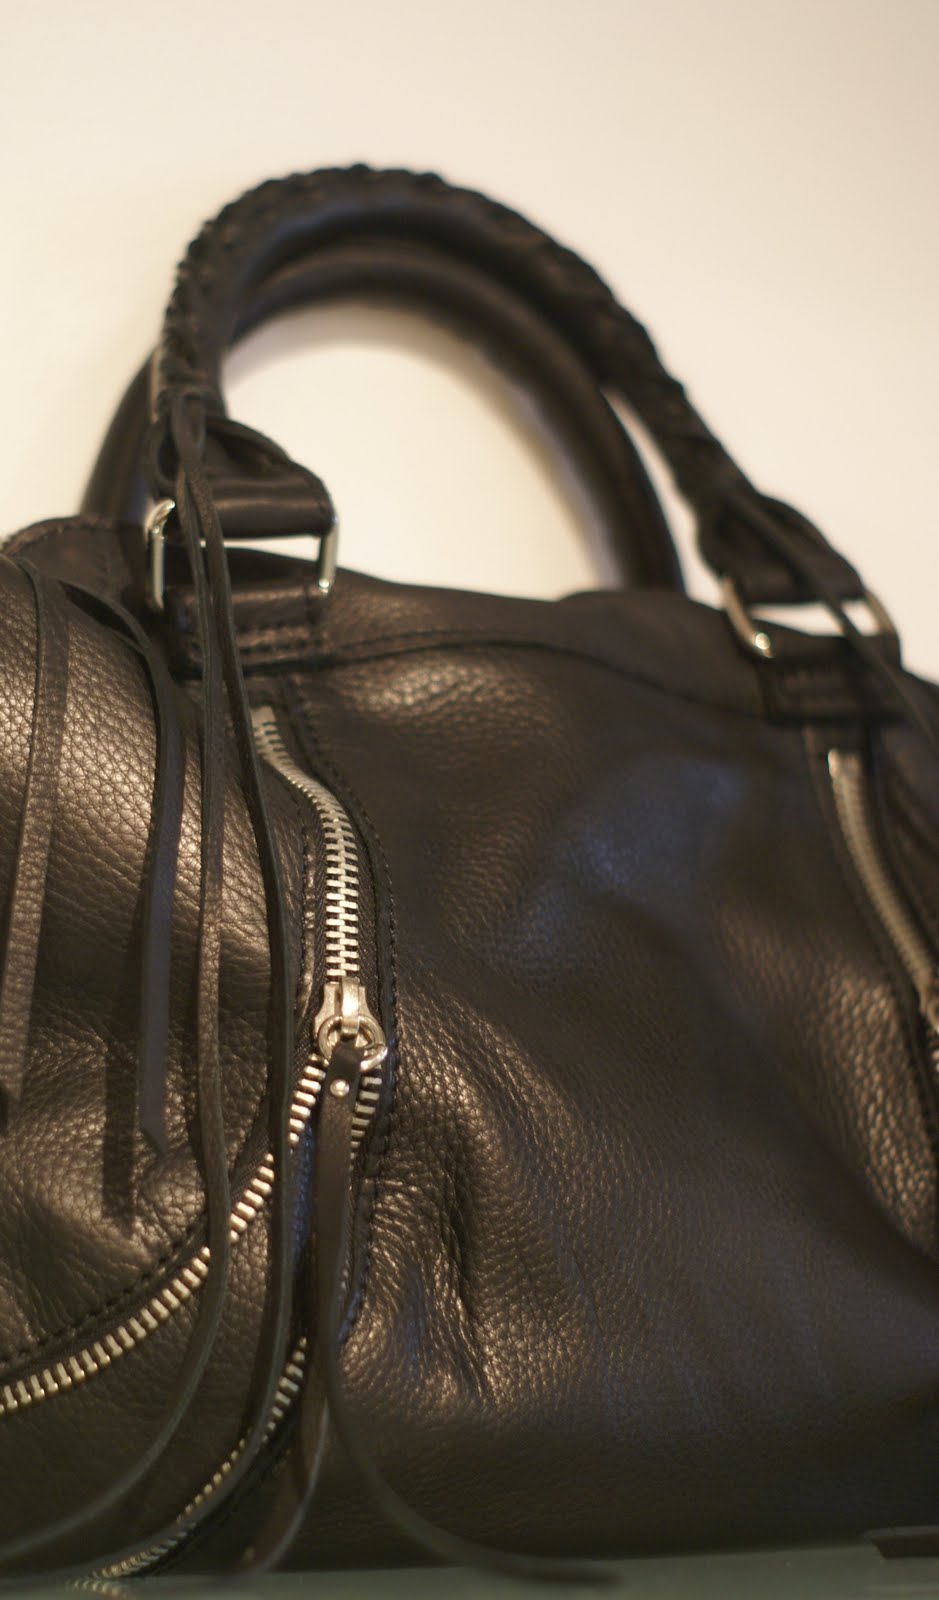 Deliciouz: New Linea Pelle Handbags!!!